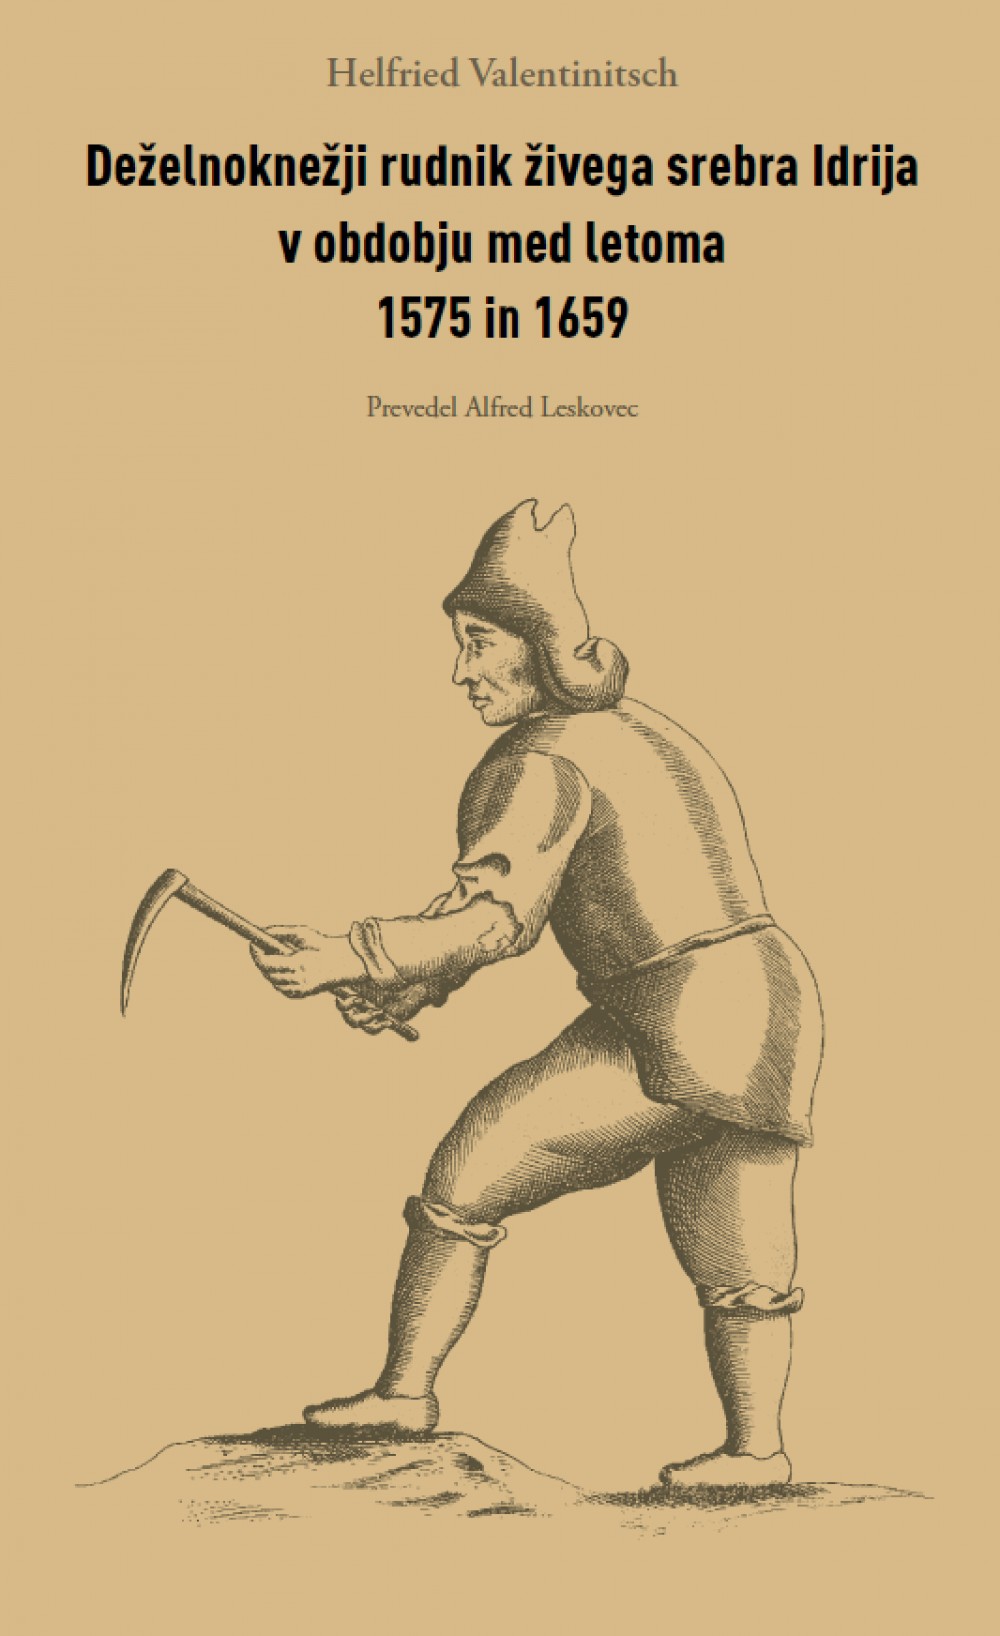 Predstavitev prevoda knjige Helfrieda Valentinitscha Deželnoknežji rudnik živega srebra Idrija v obdobju med letoma 1575 in 1659